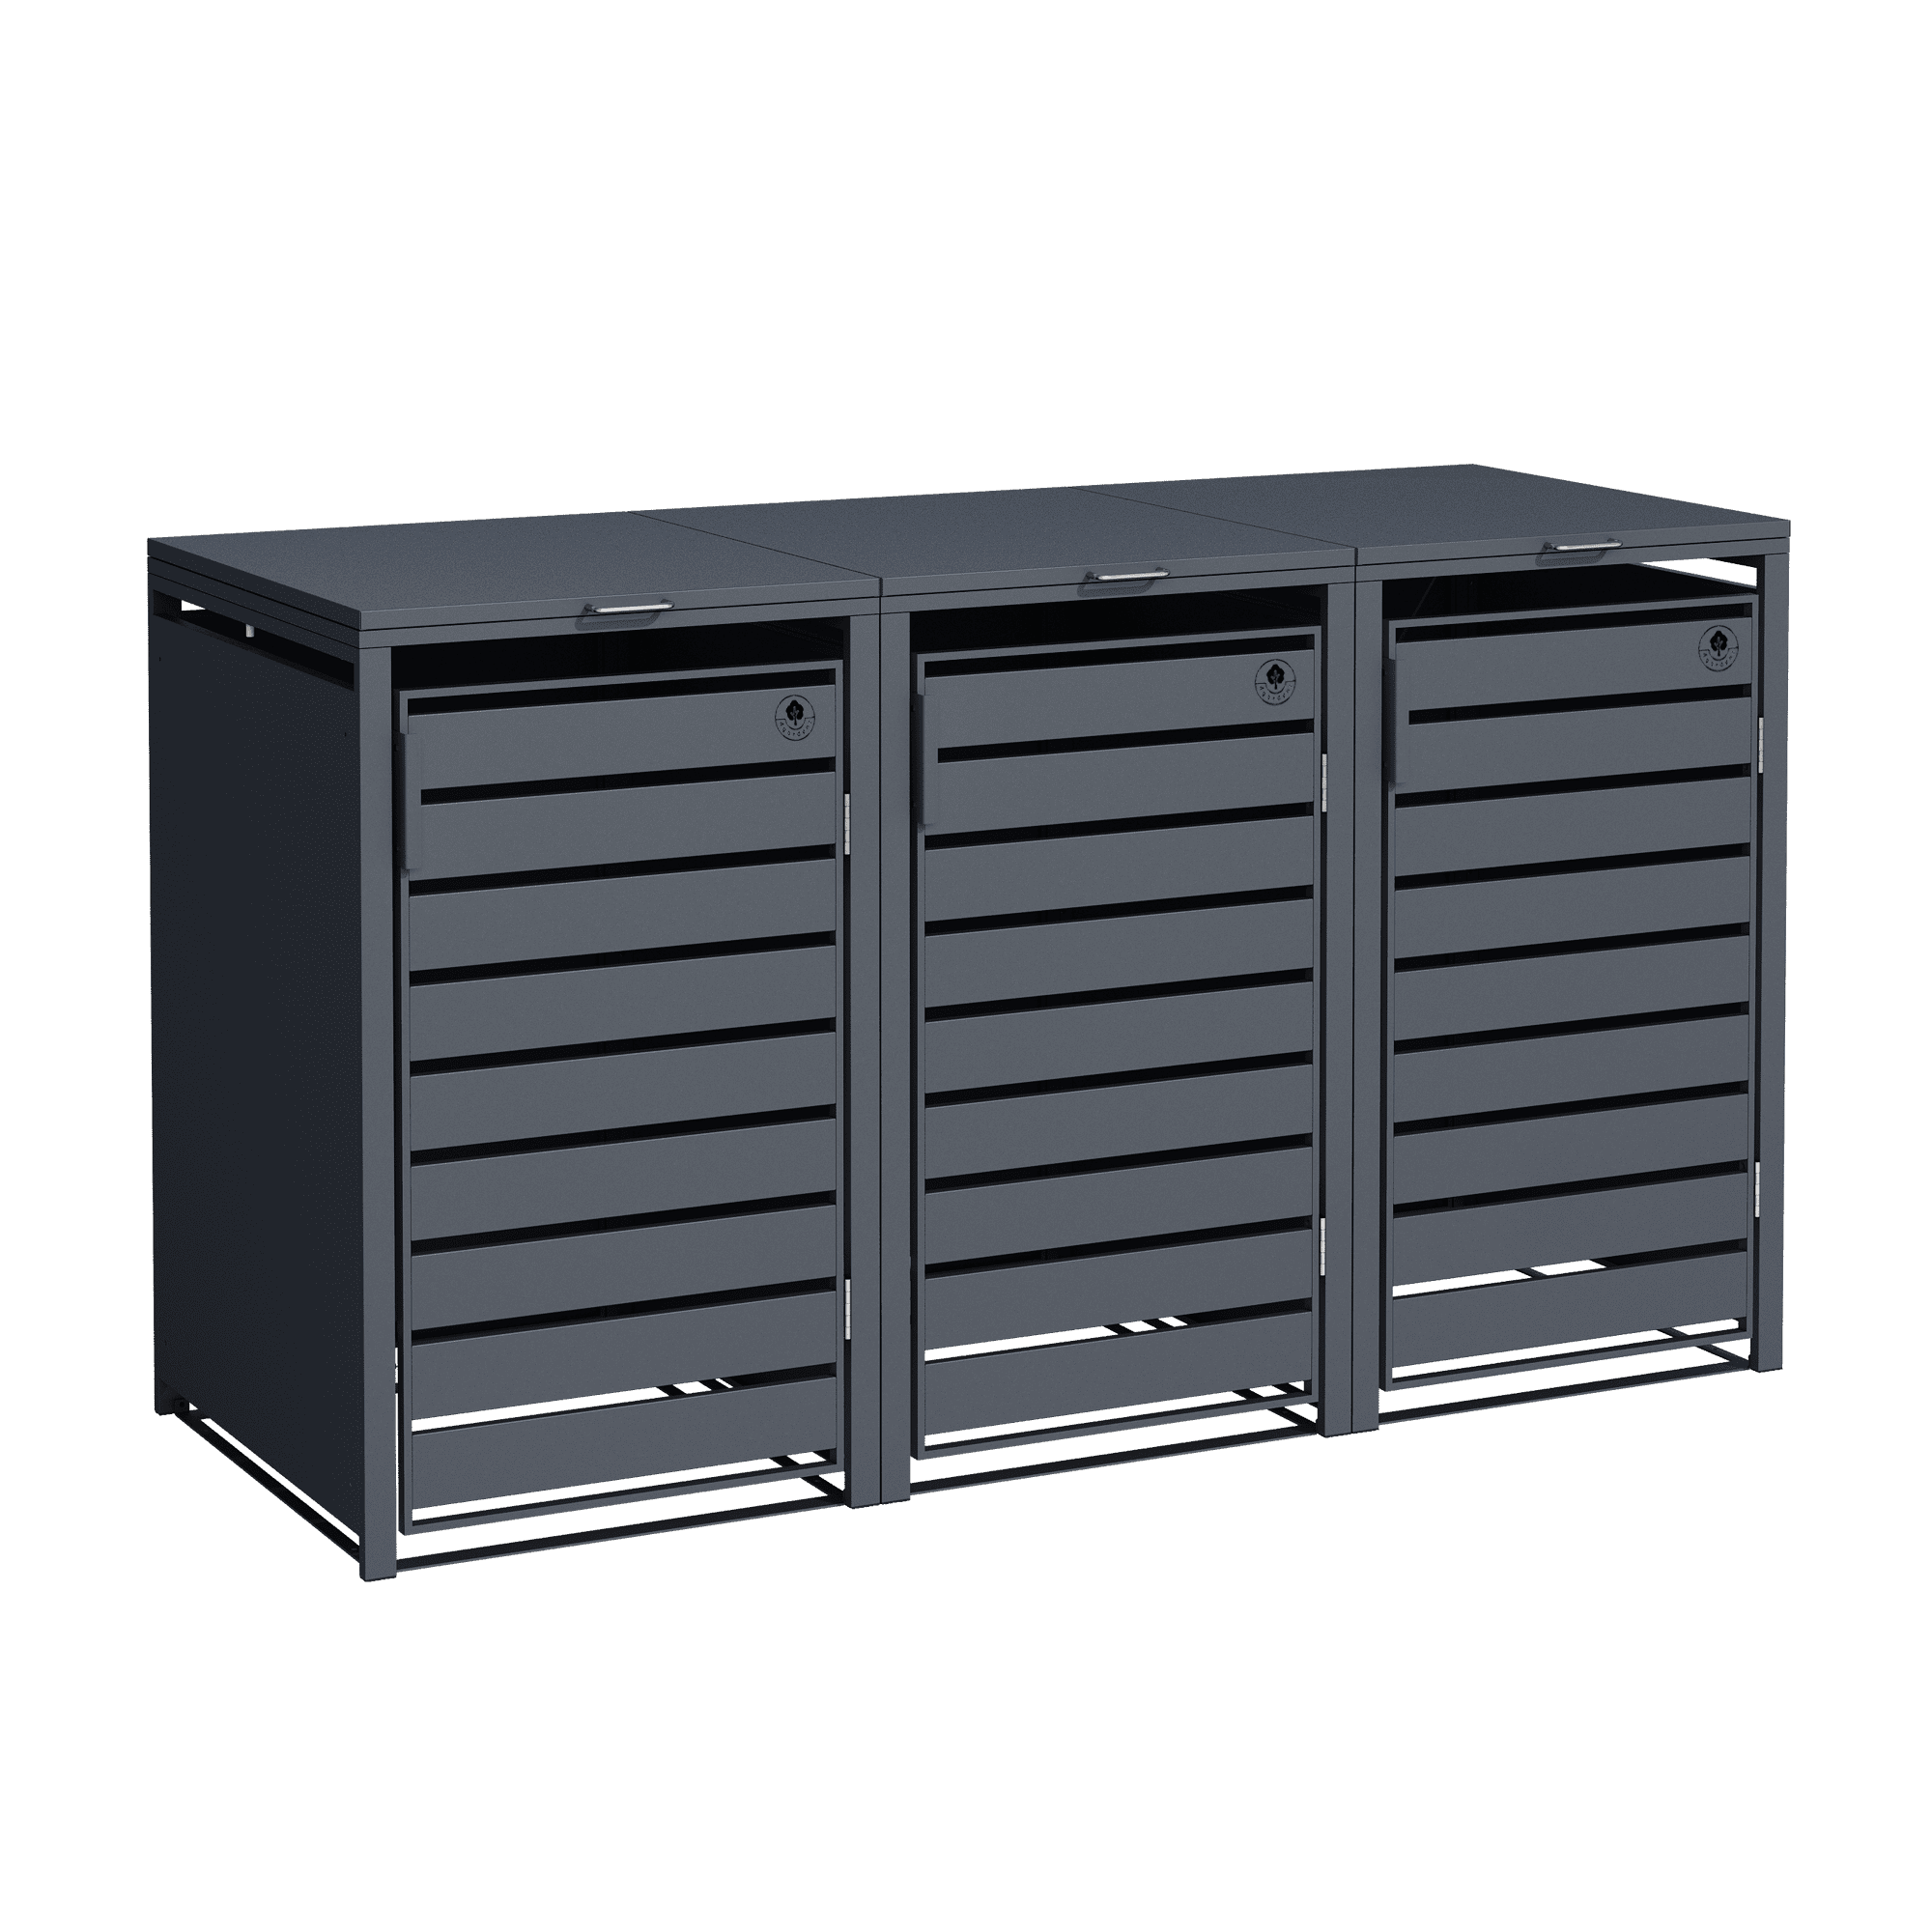 4gardenz® Containerombouw 3 Afvalbakken - Kliko Ombouw - Antraciet